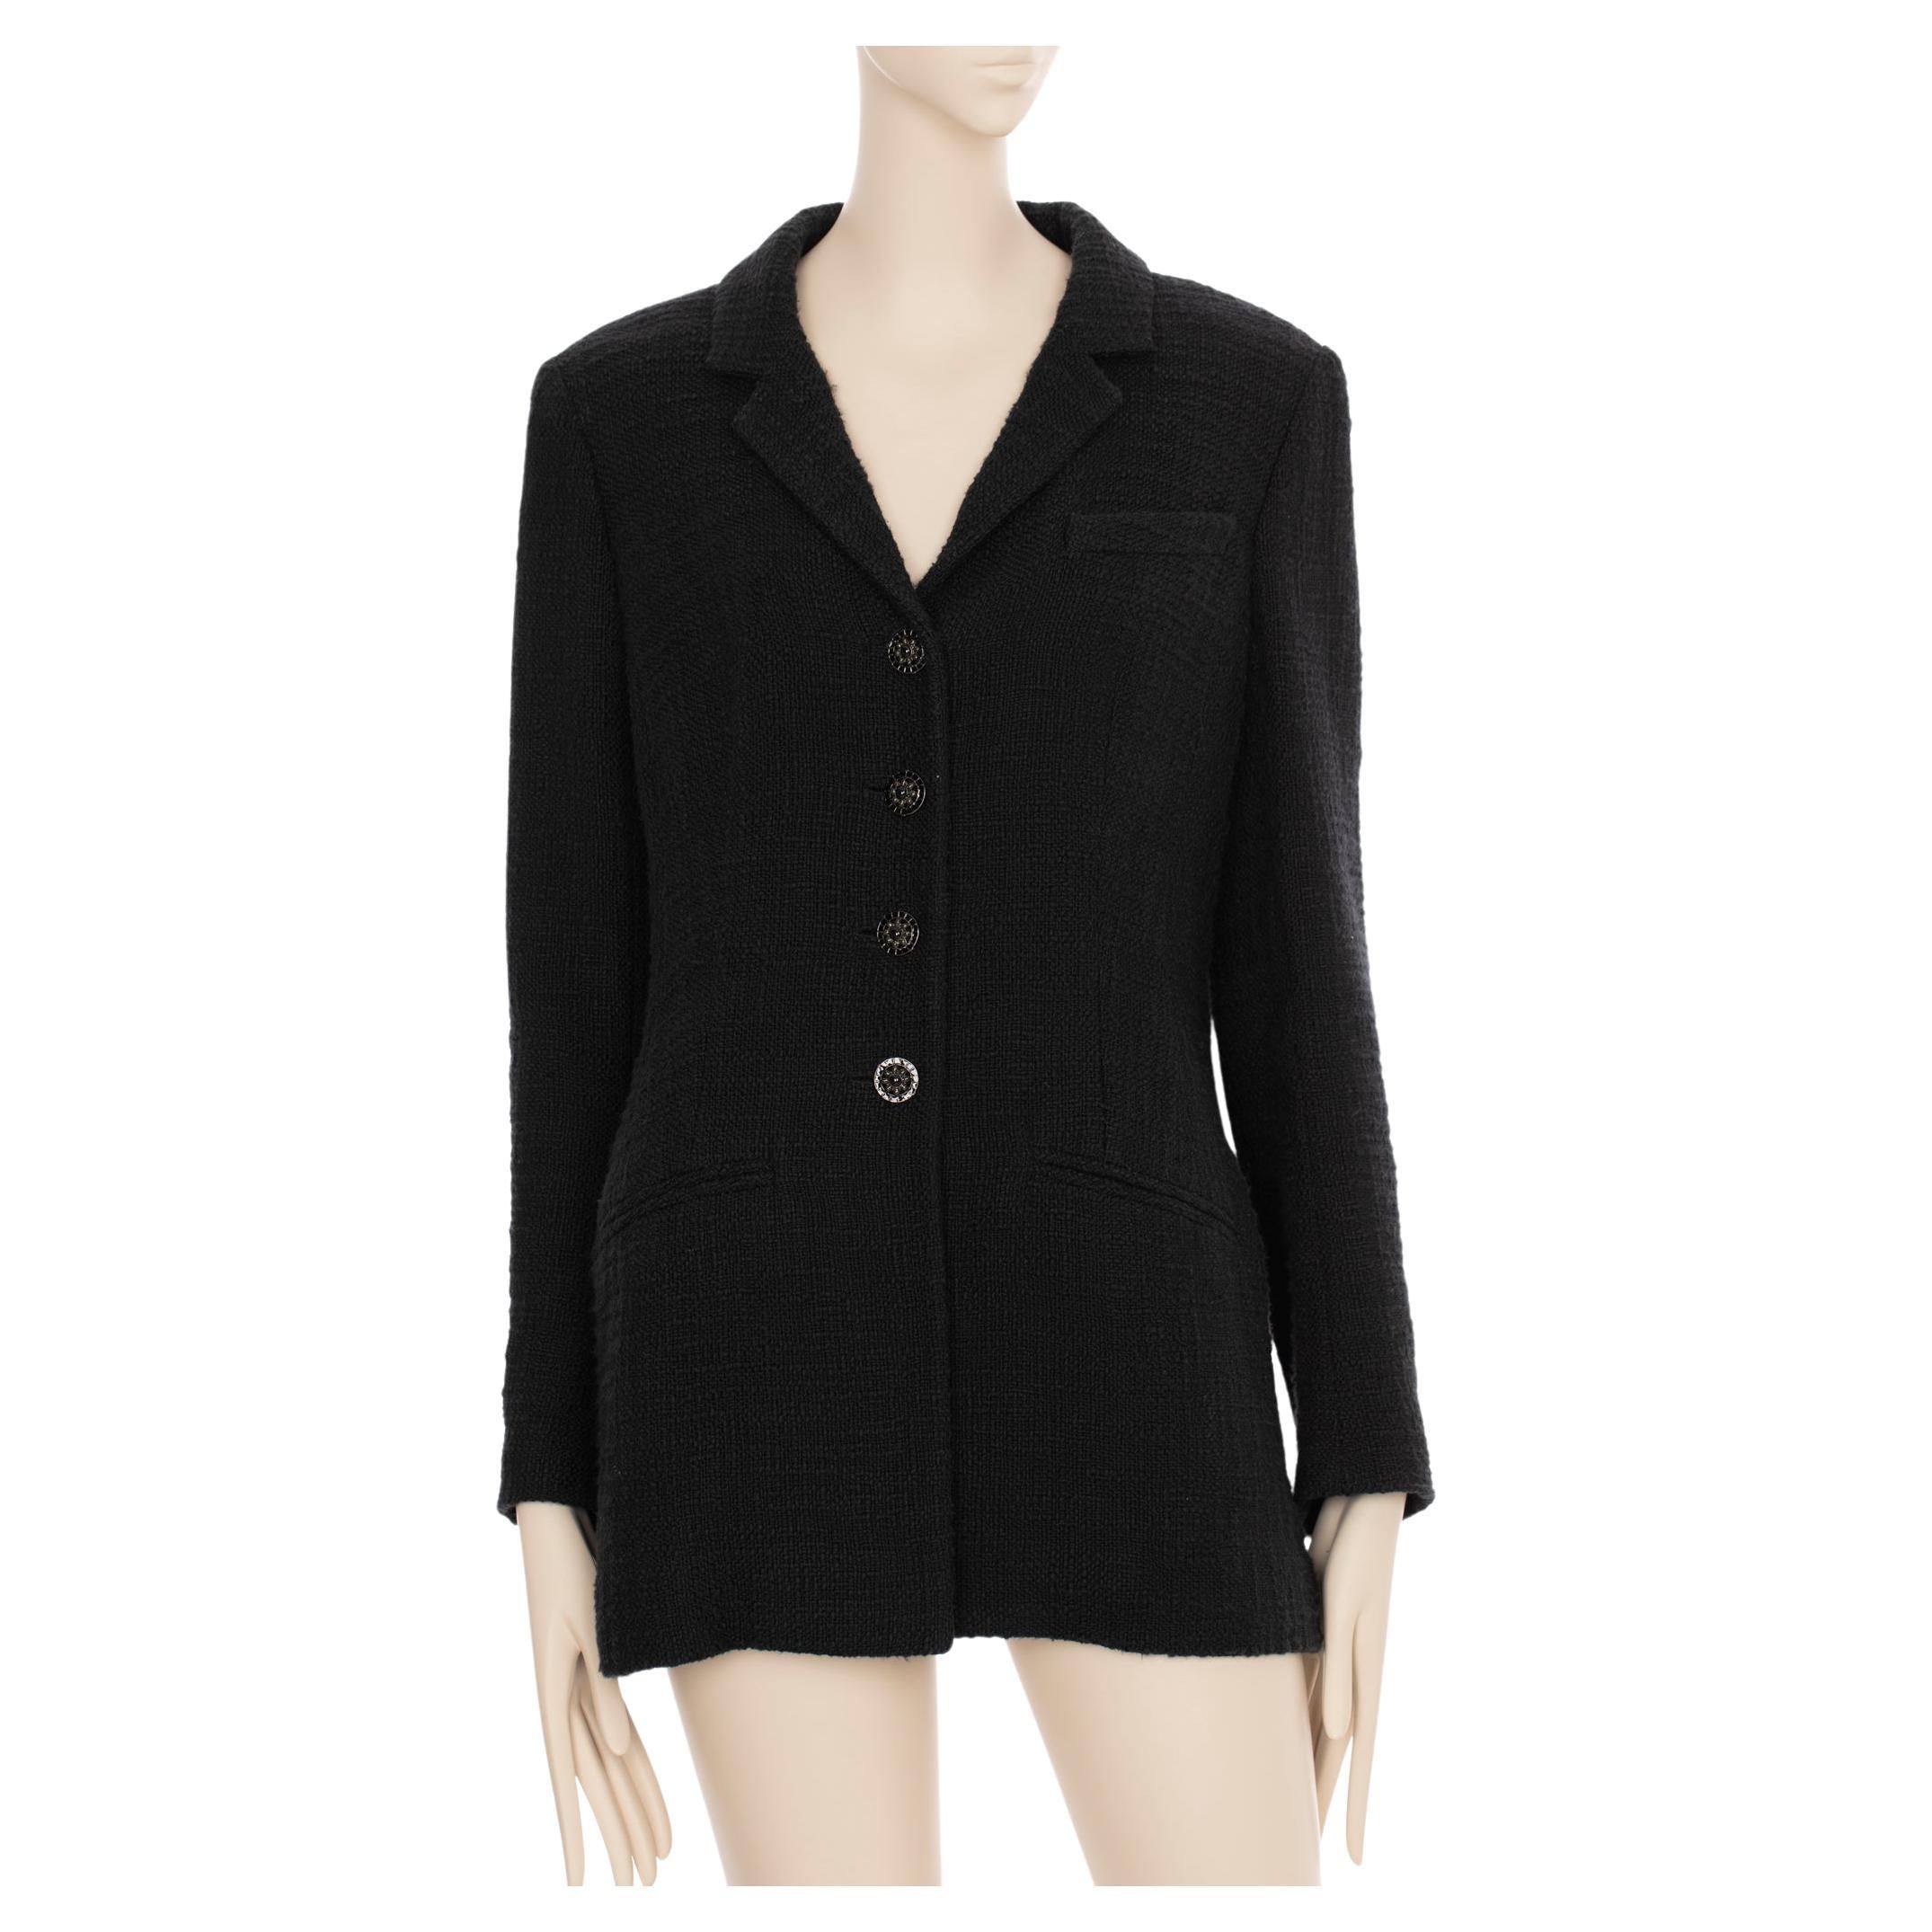 Chanel Black Jacket Size 42 - 77 For Sale on 1stDibs